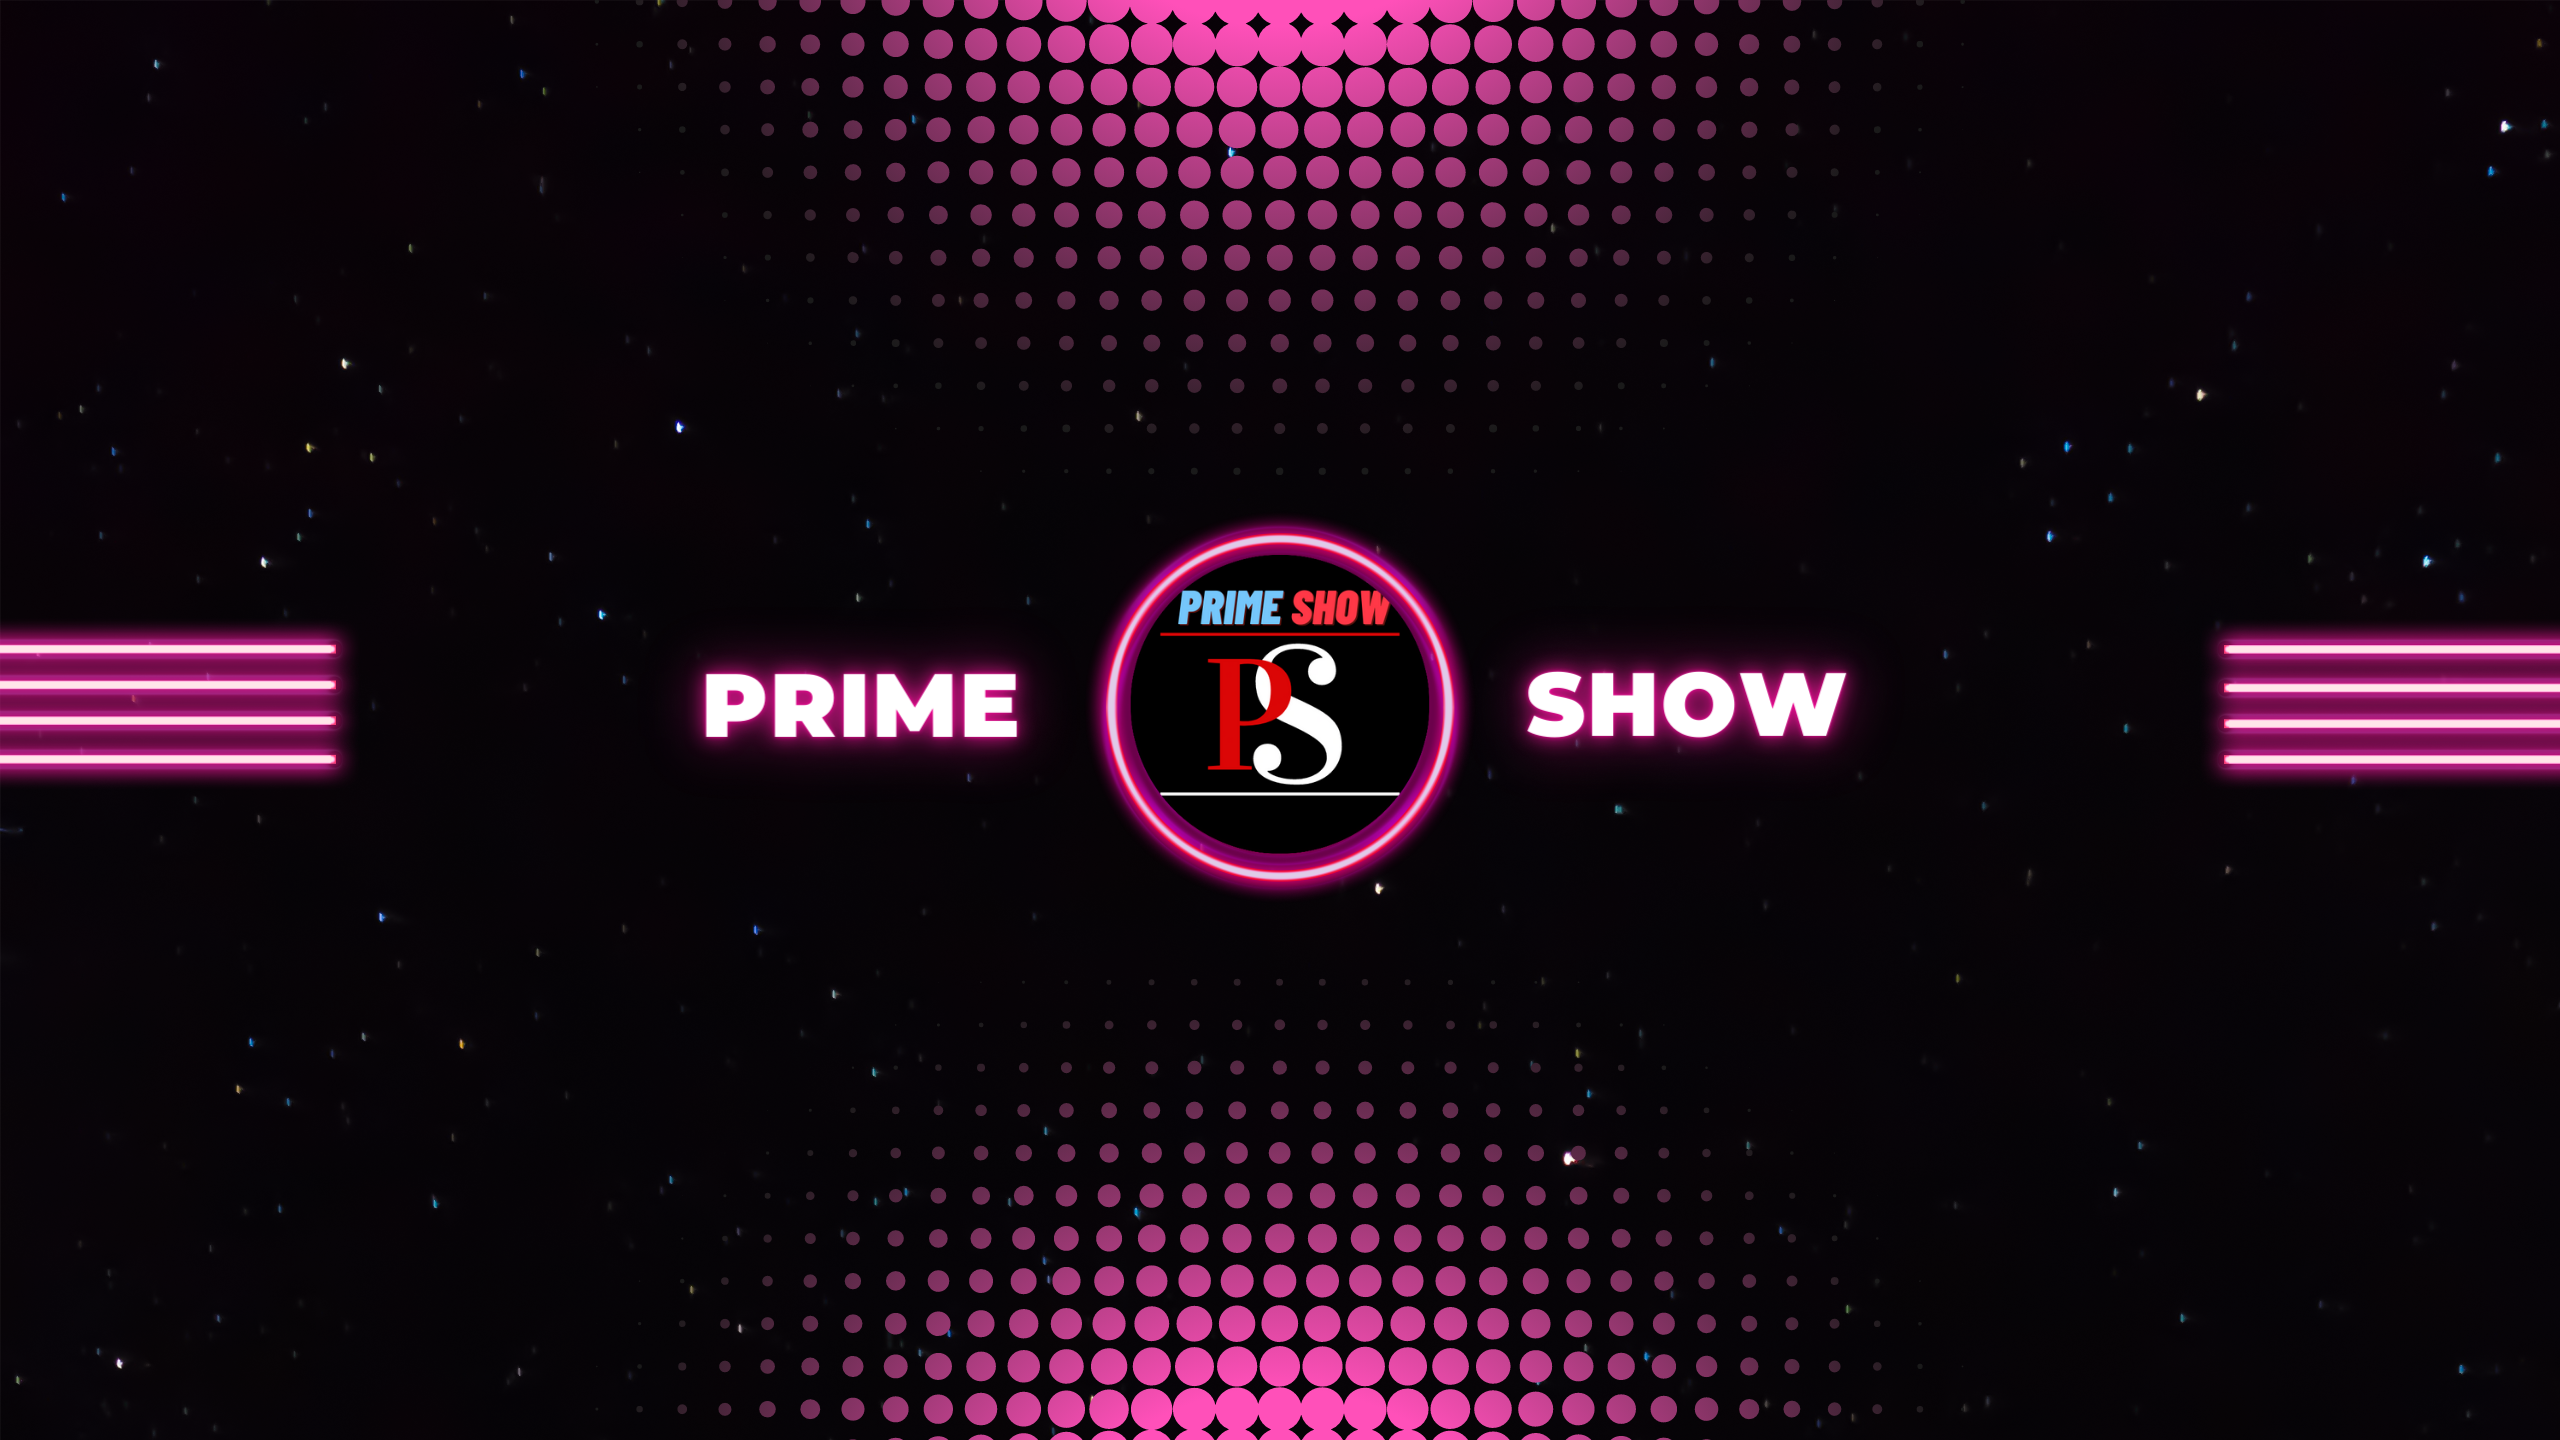 Prime show